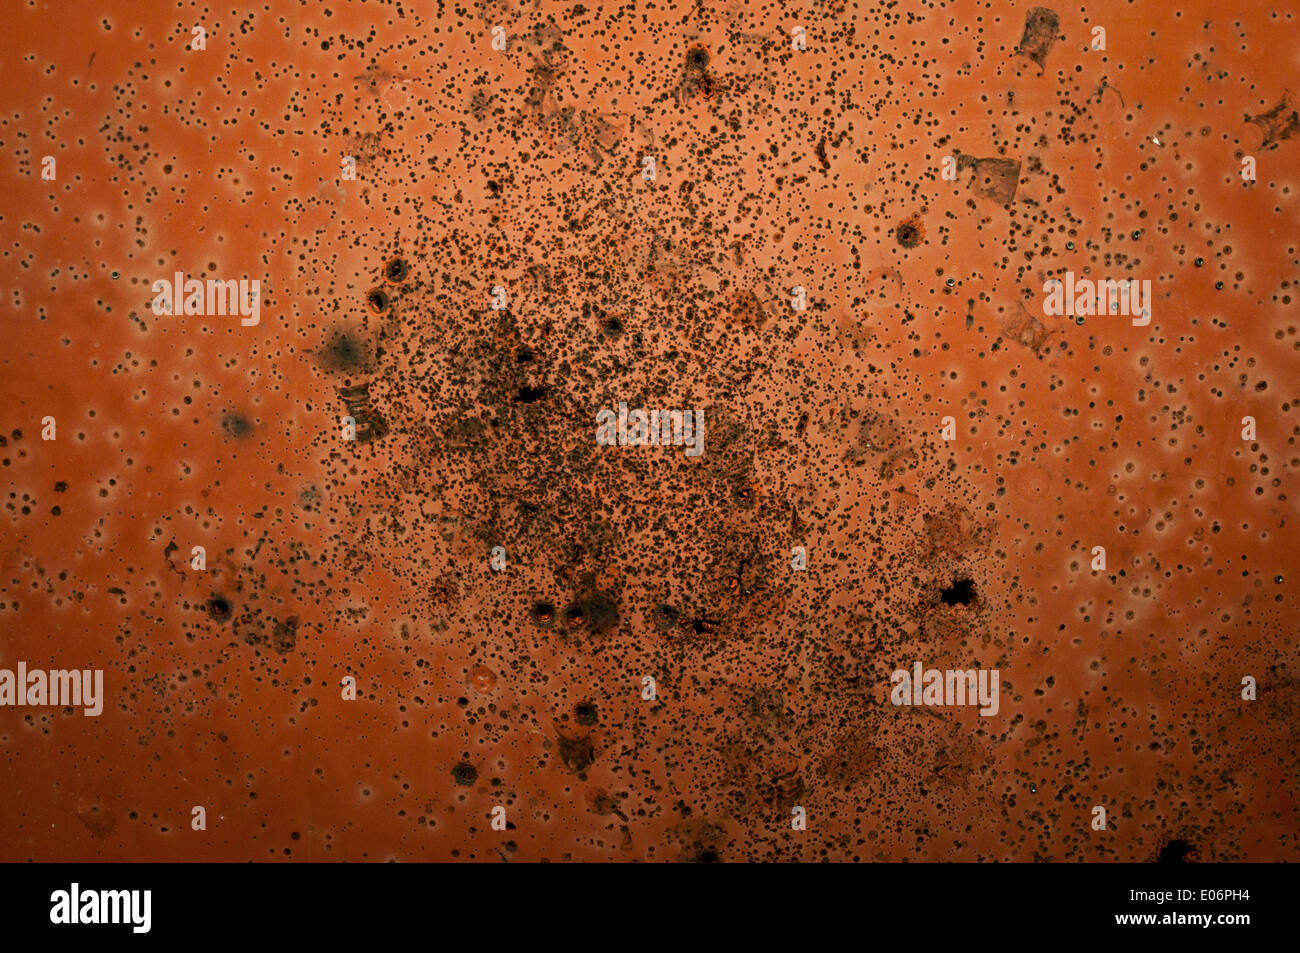 Orange parete piena di buchi da proiettili e agglomerati in forma di pellets Foto Stock